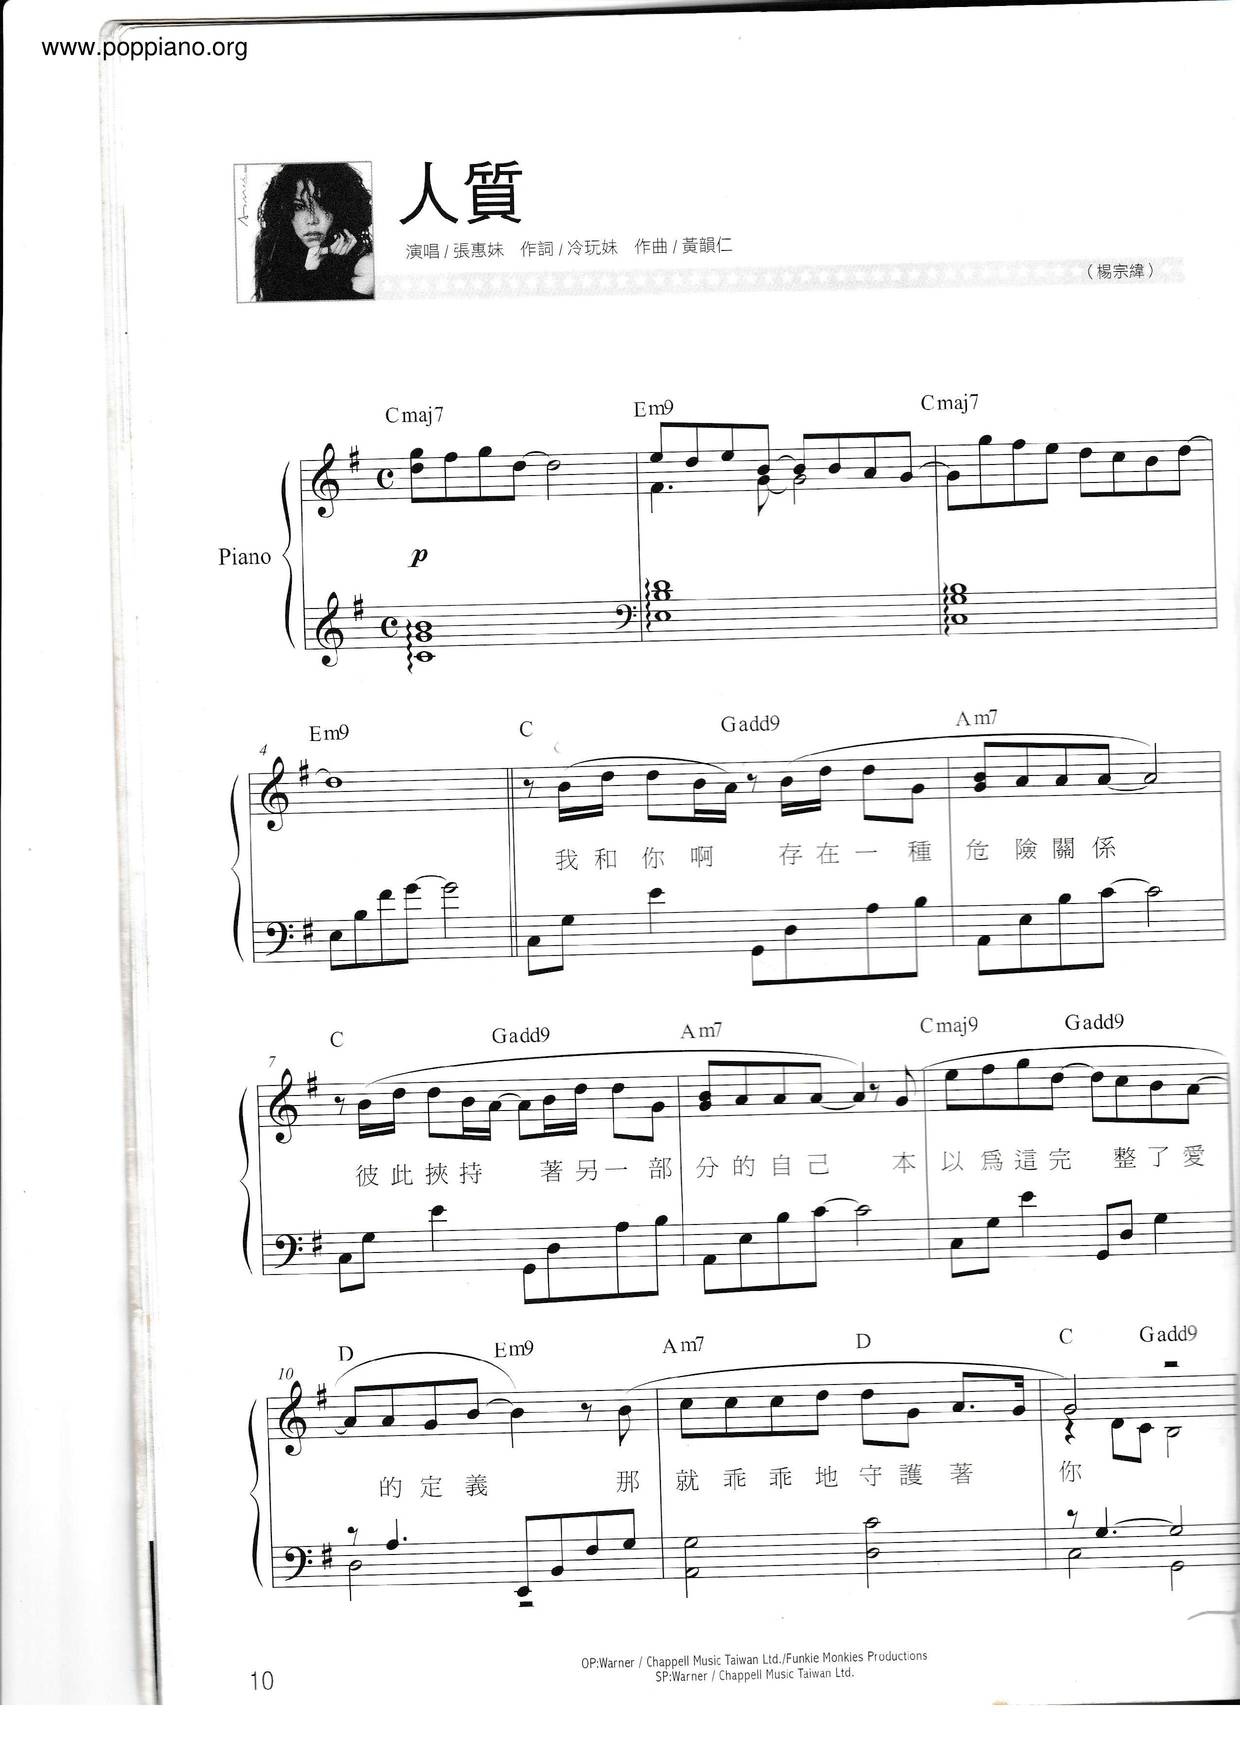 张惠妹-人质 琴谱/五线谱pdf-香港流行钢琴协会琴谱下载